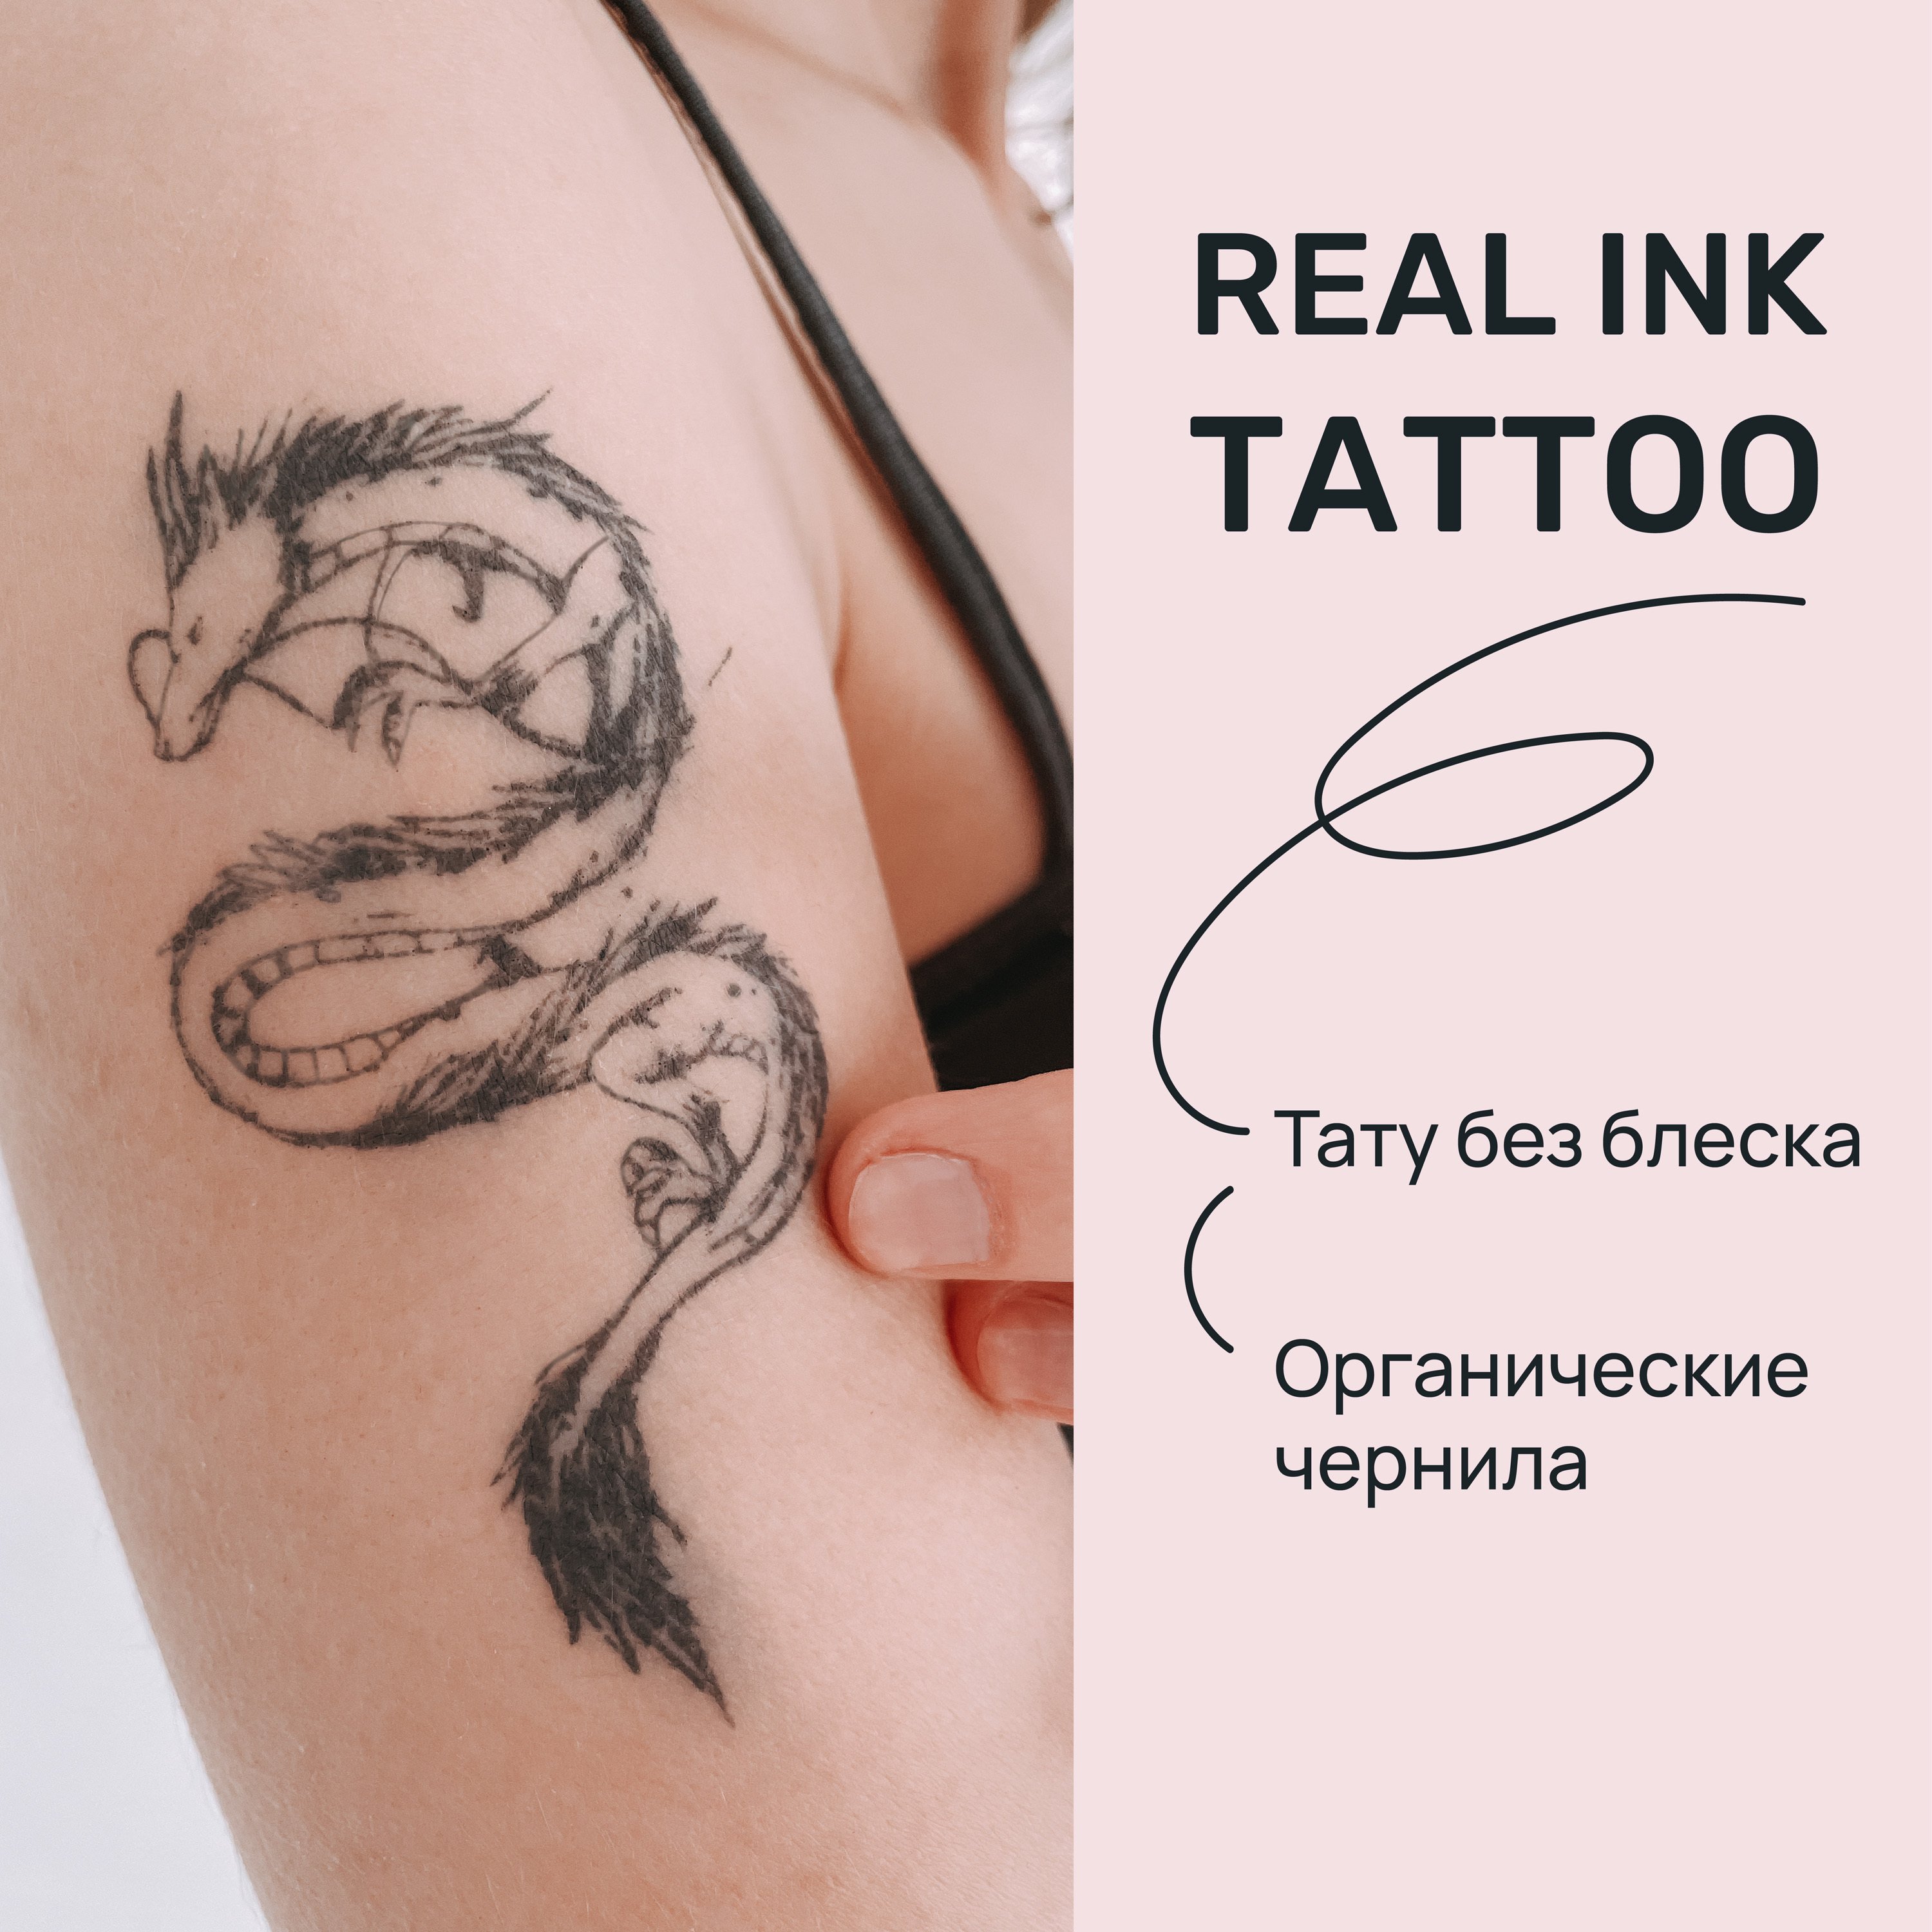 Заживление татуировки | hb-crm.ru